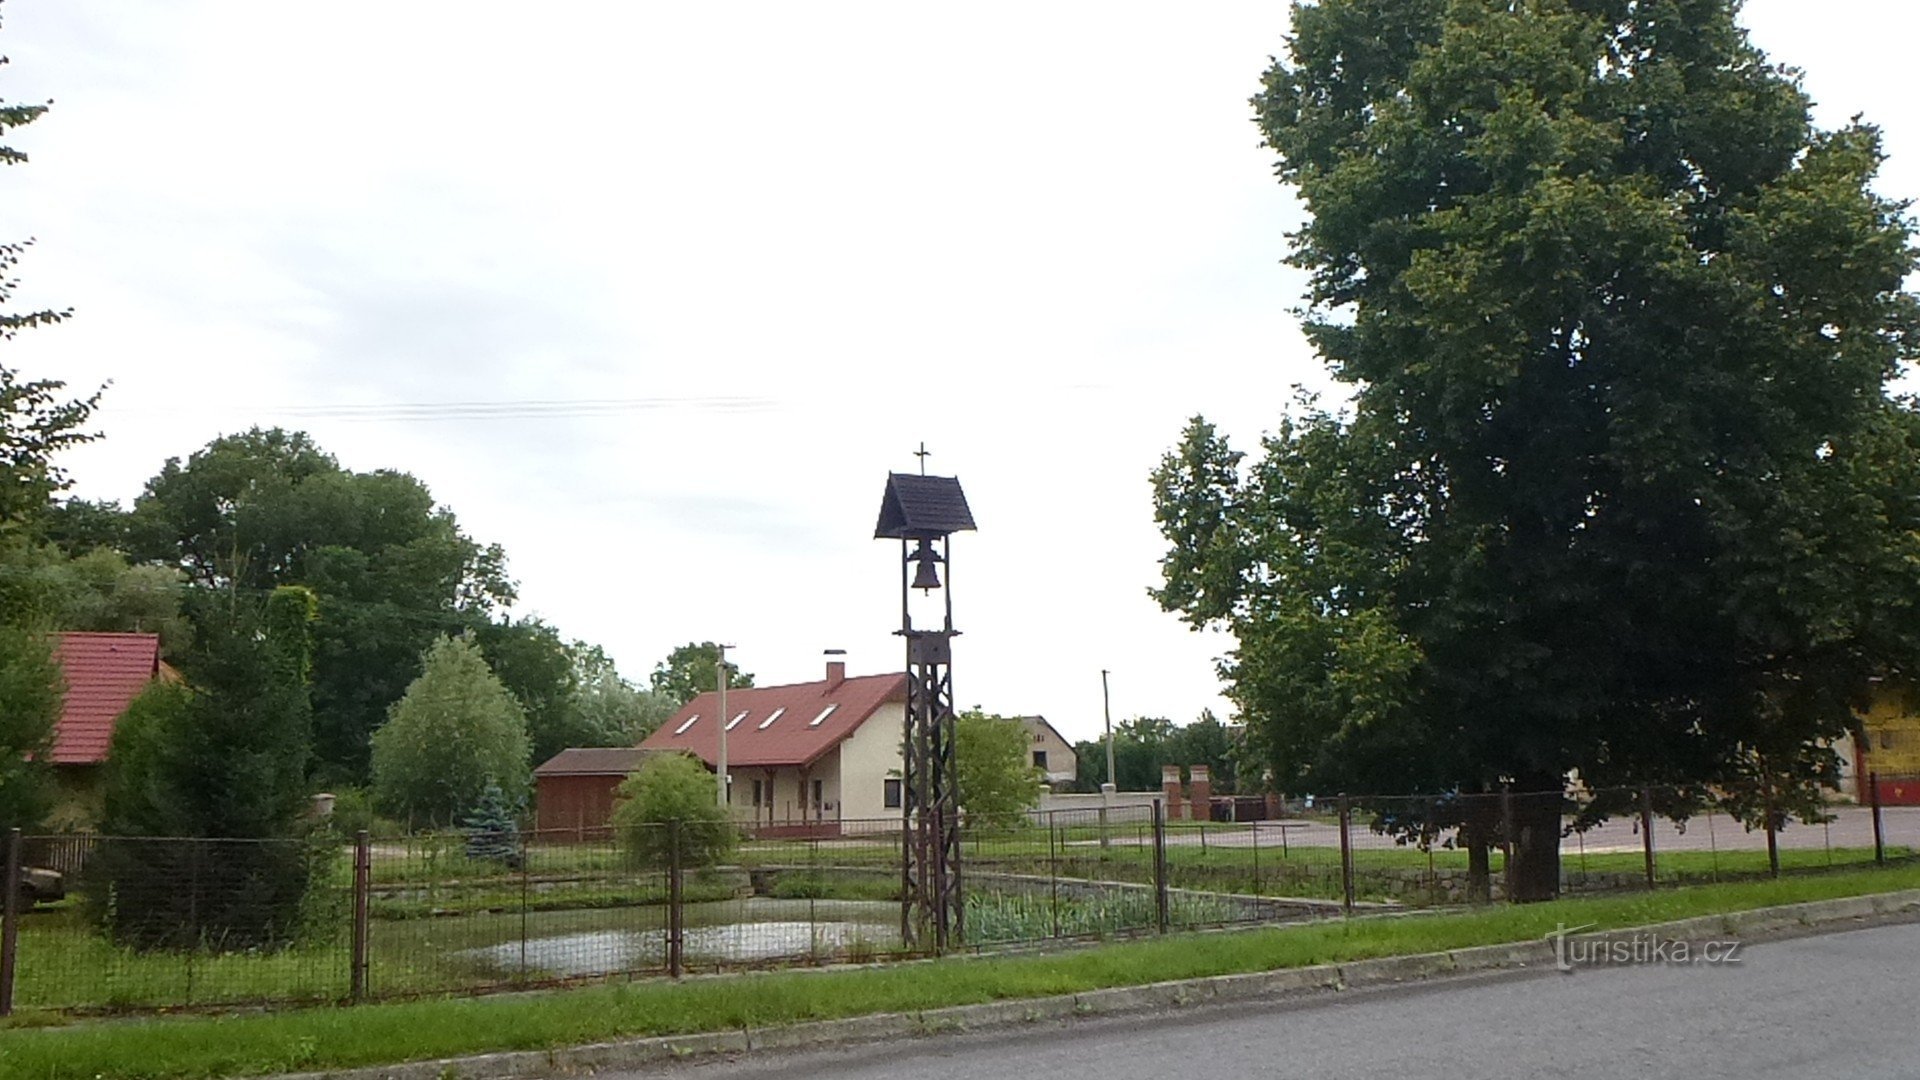 zicht op de oplegger - klokkentoren op de voorgrond